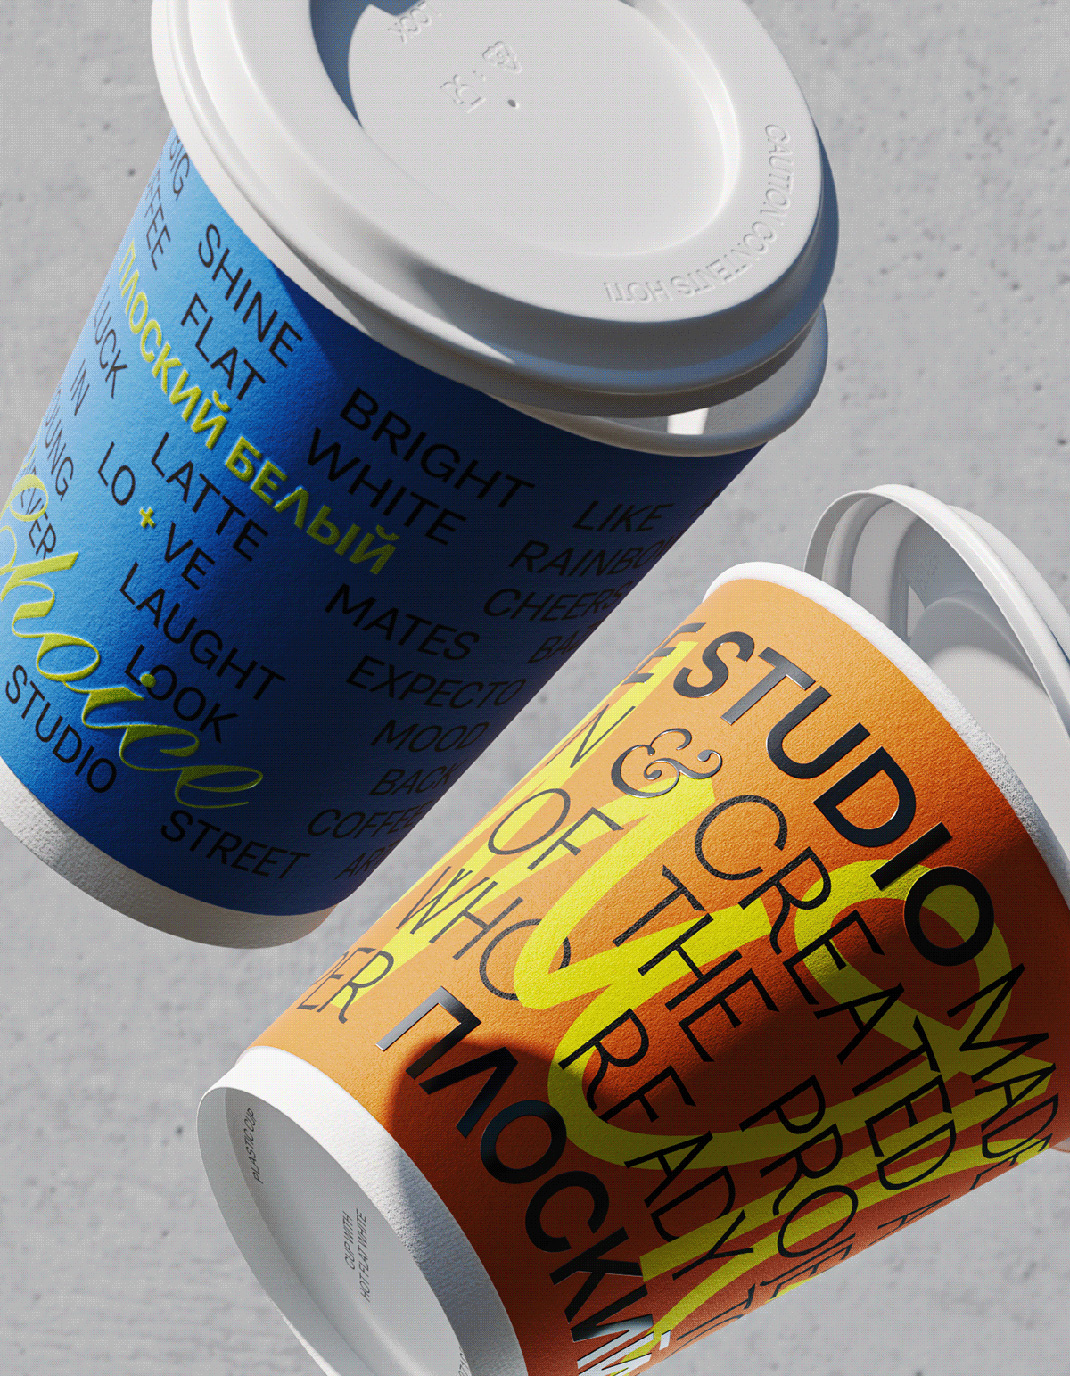 咖啡幻觉Ploskiy Beliy  俄罗斯 墨西哥 咖啡店 字体设计 包装设计 logo设计 vi设计 空间设计